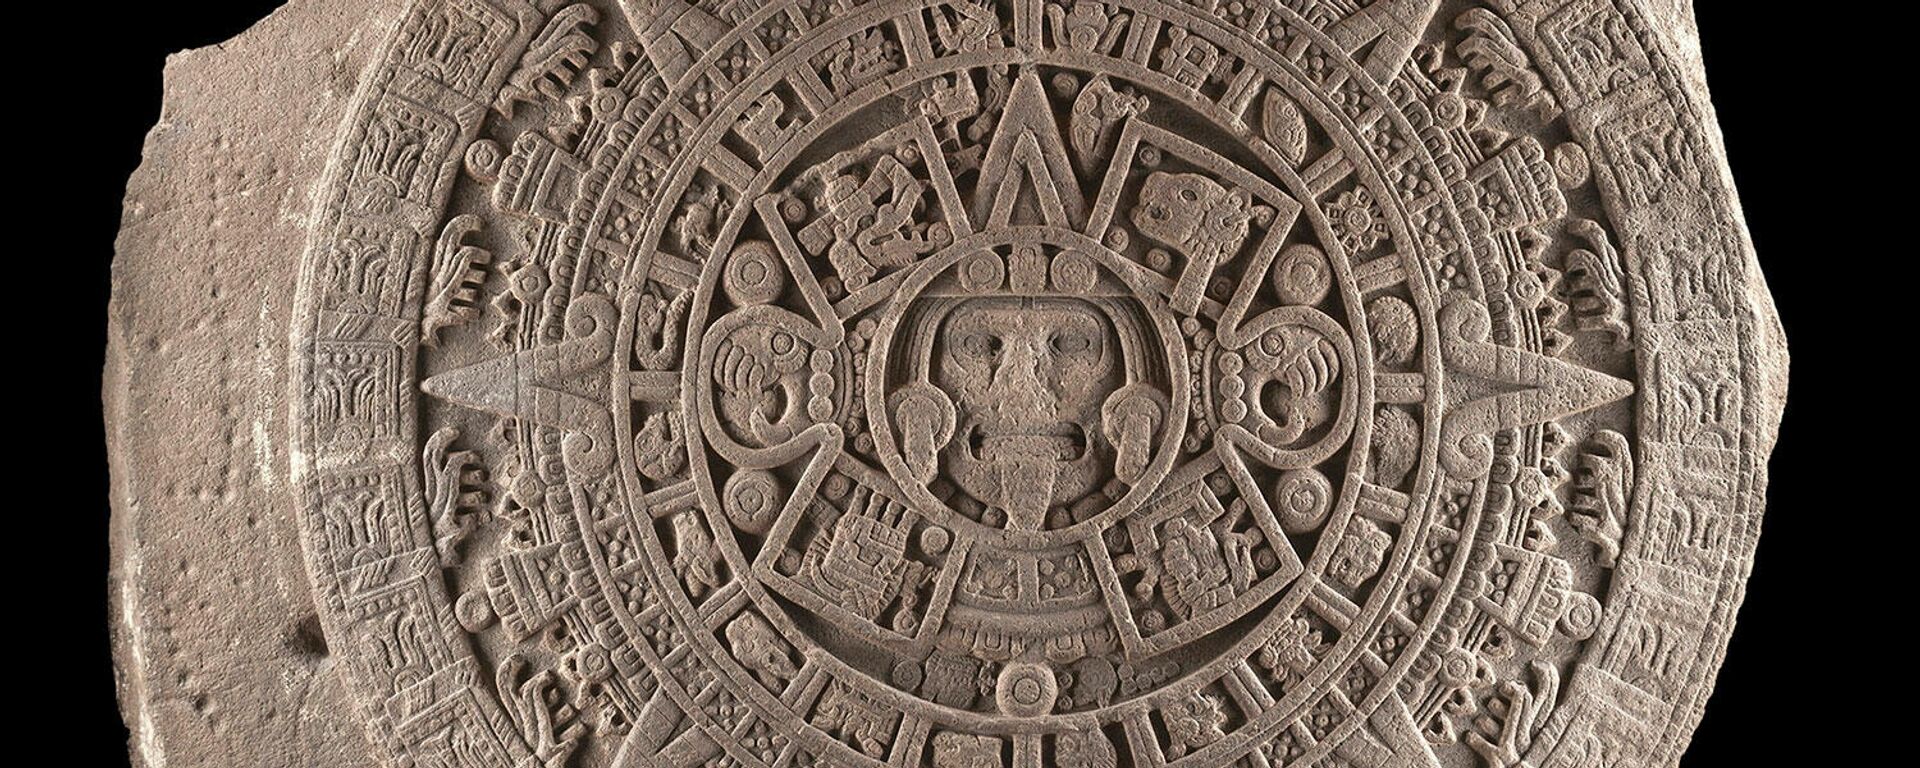 La Piedra del Sol, expresión de la cultura mexica y su idea del tiempo. - Sputnik Mundo, 1920, 17.12.2021